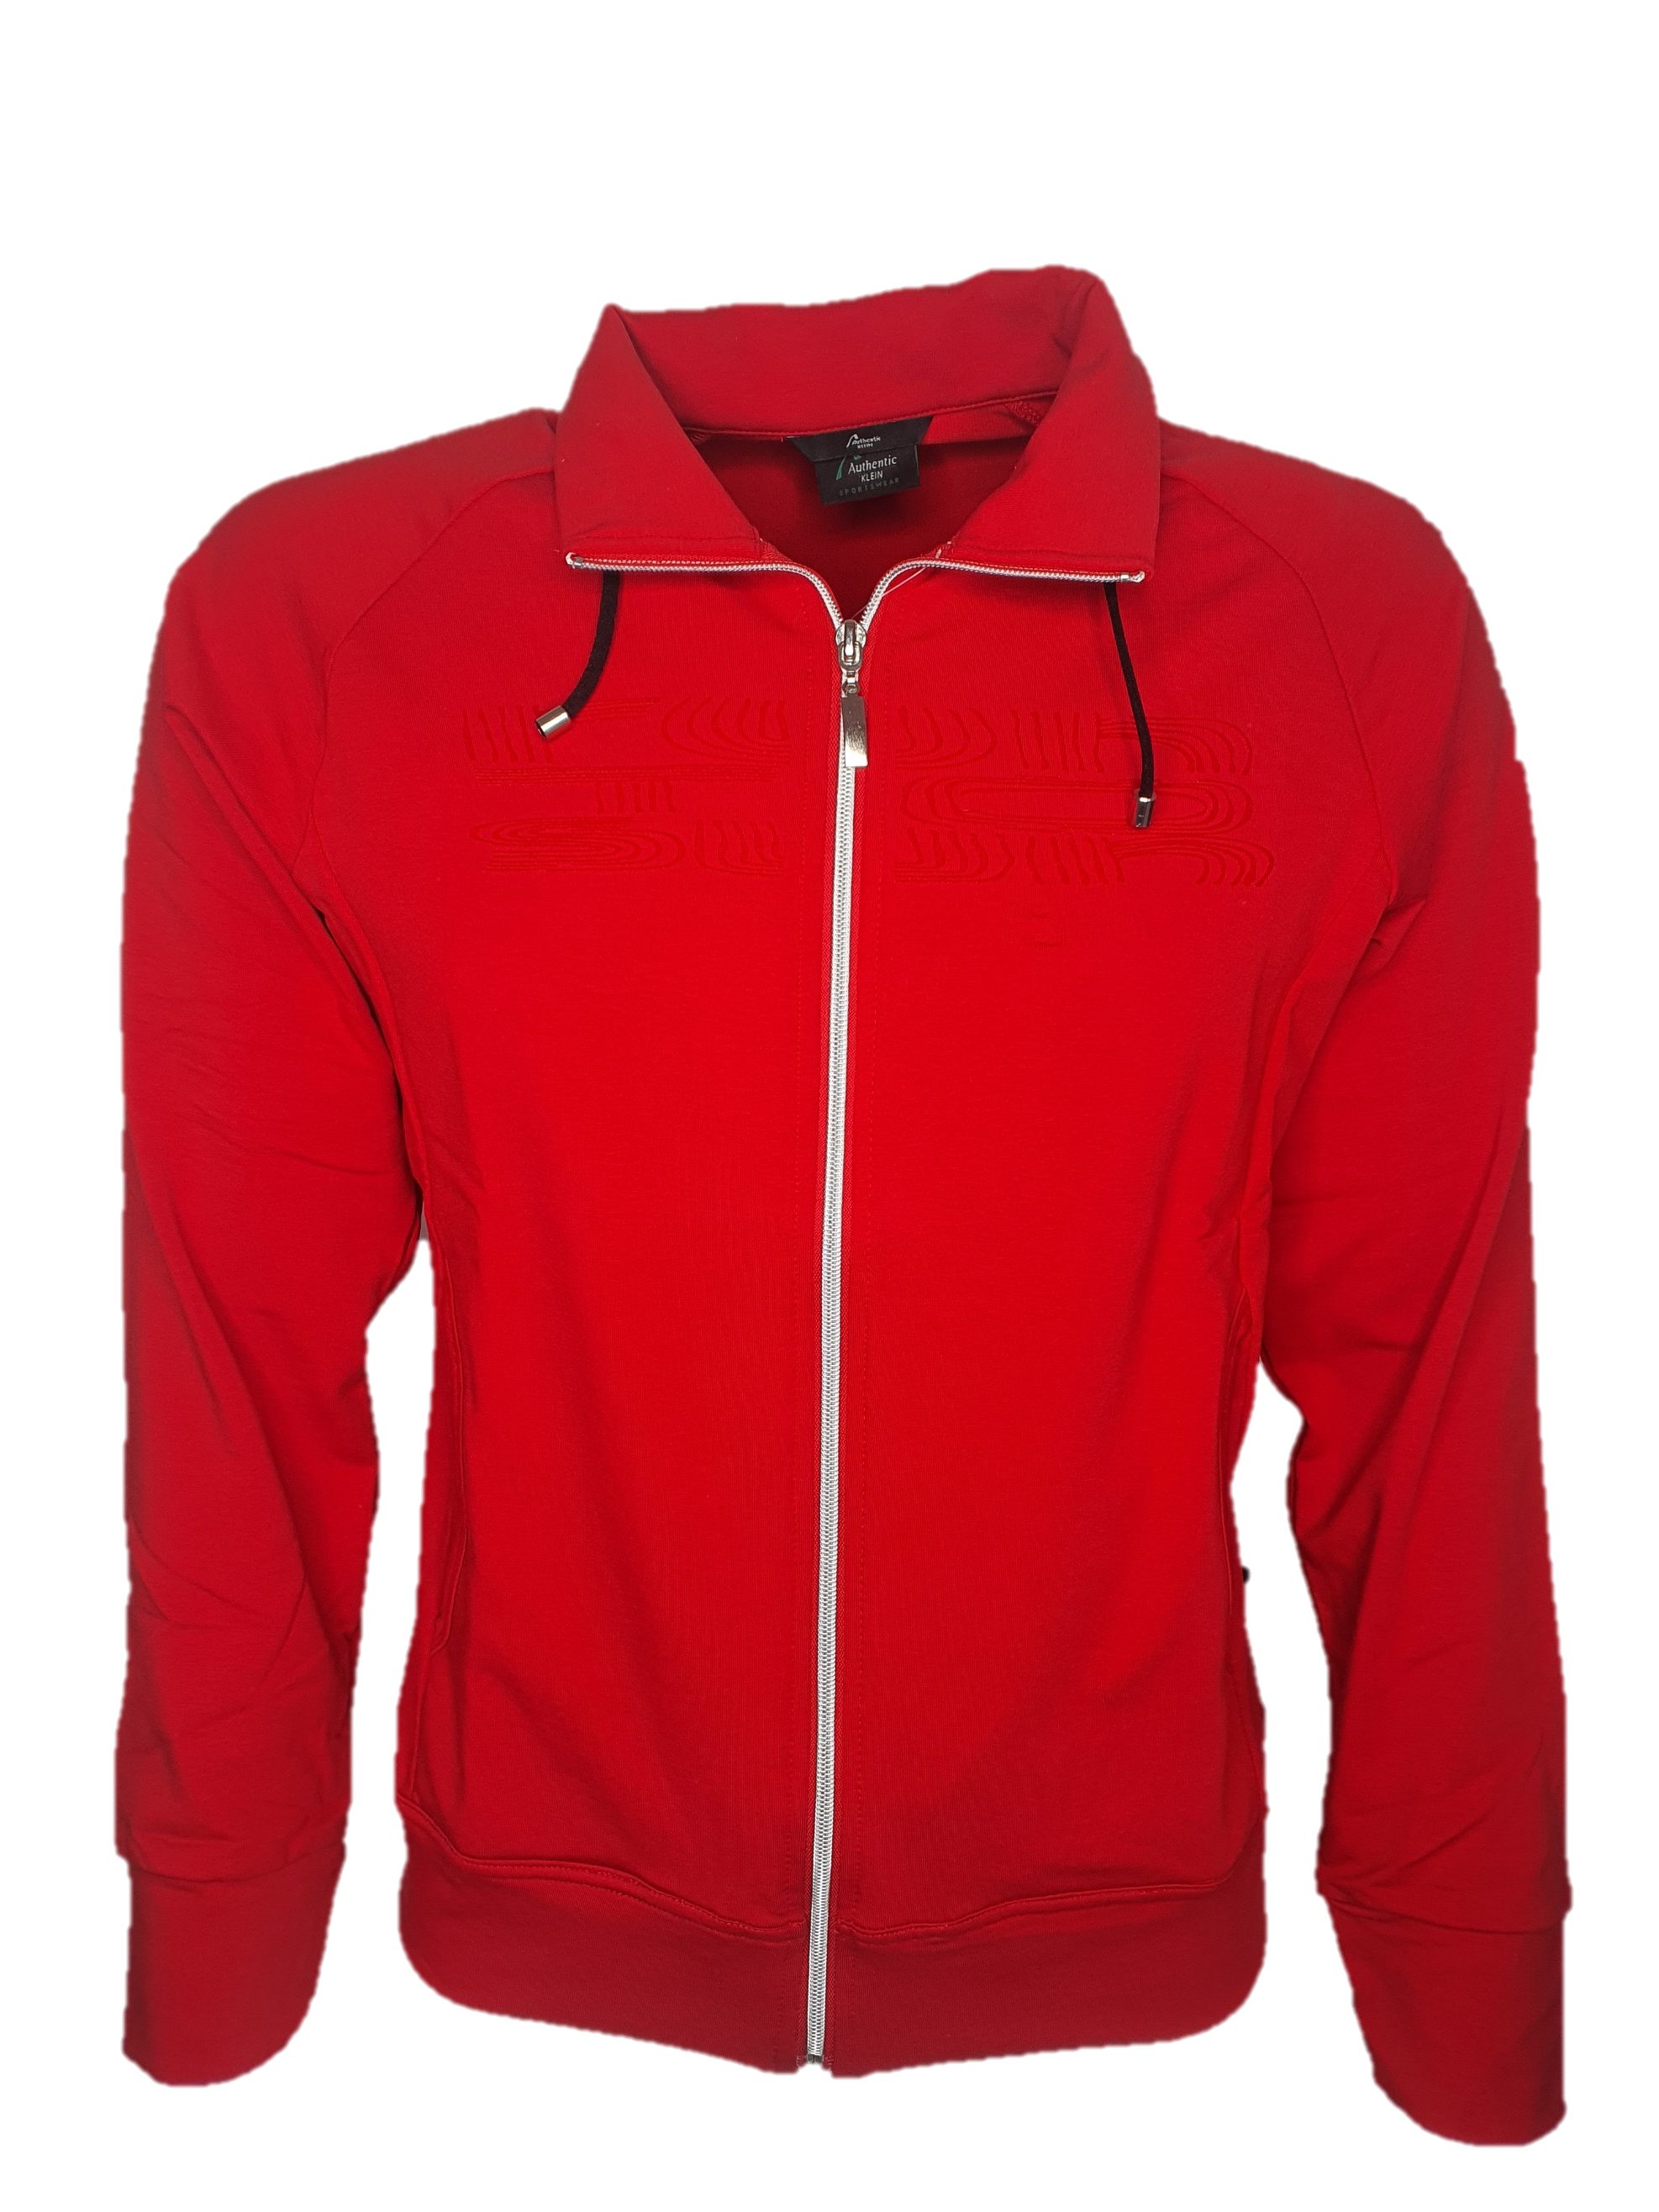 Authentic Klein Sweatjacke Sportive Damen Baumwoll-Mix Jacke mit Zierstickerei Rot